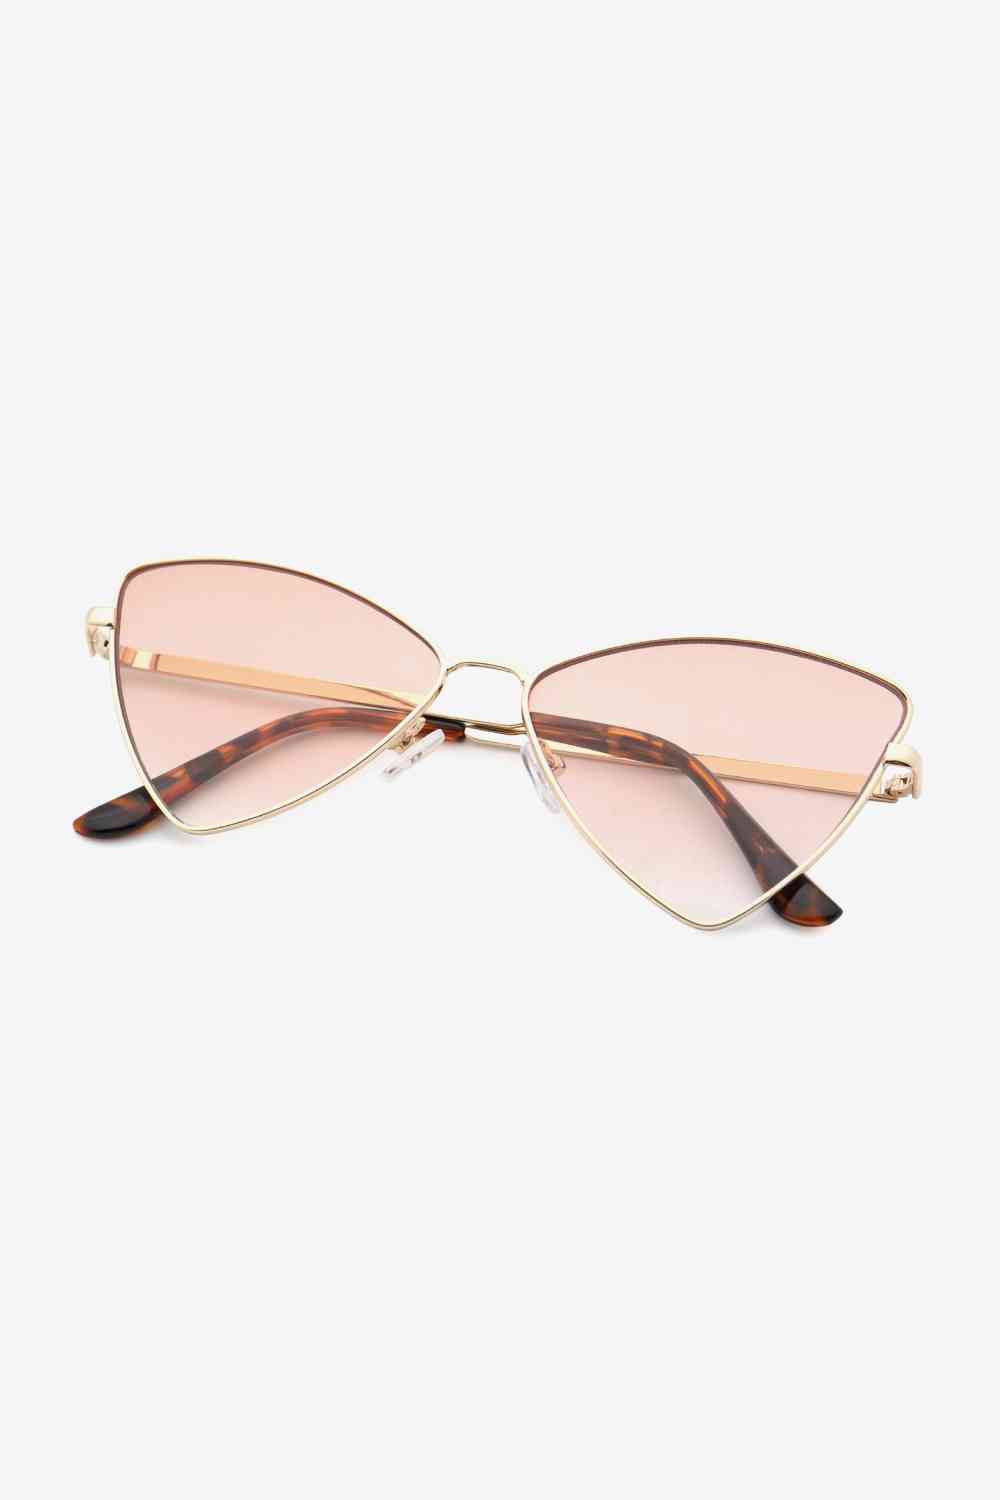 TEEK - Metal Frame Cat-Eye Sunglasses EYEGLASSES TEEK Trend   